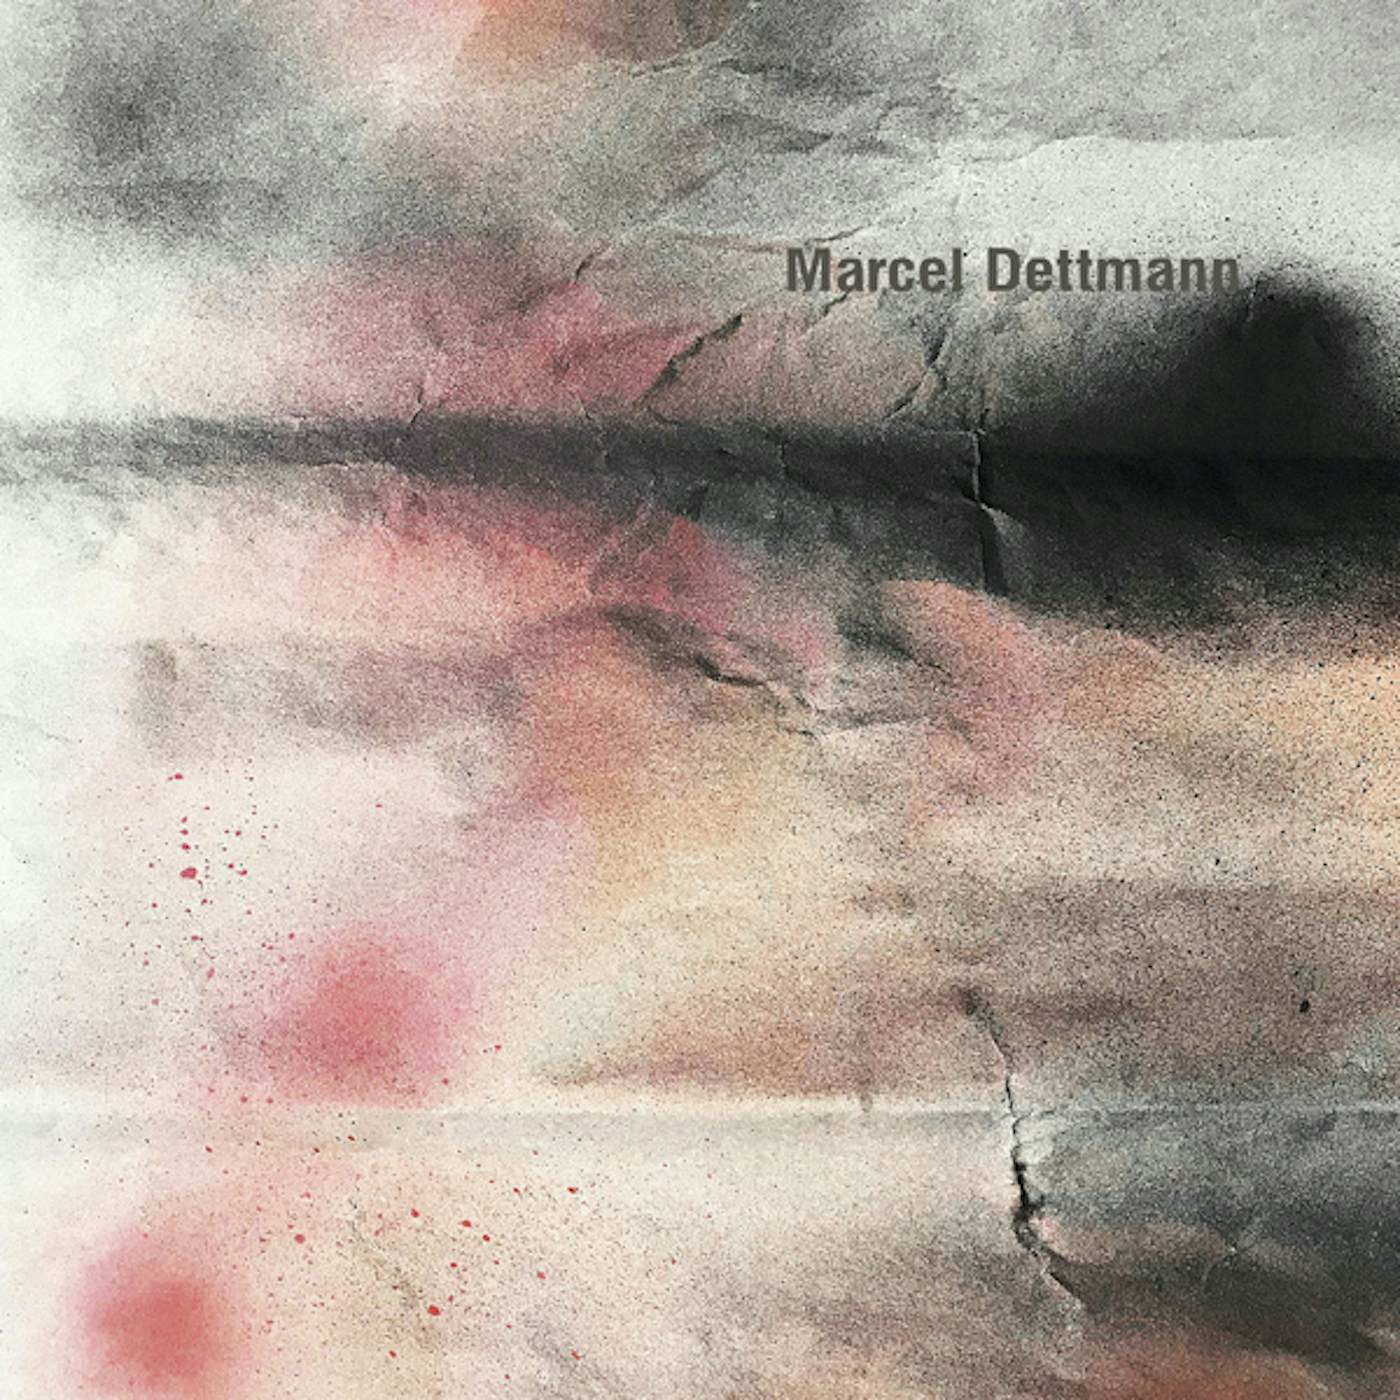 Marcel Dettmann Test-File Vinyl Record